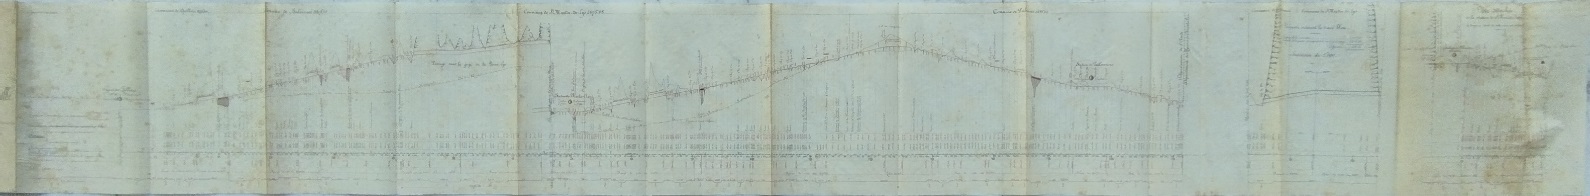 Profil en long détaillé de 1878 - vue complète